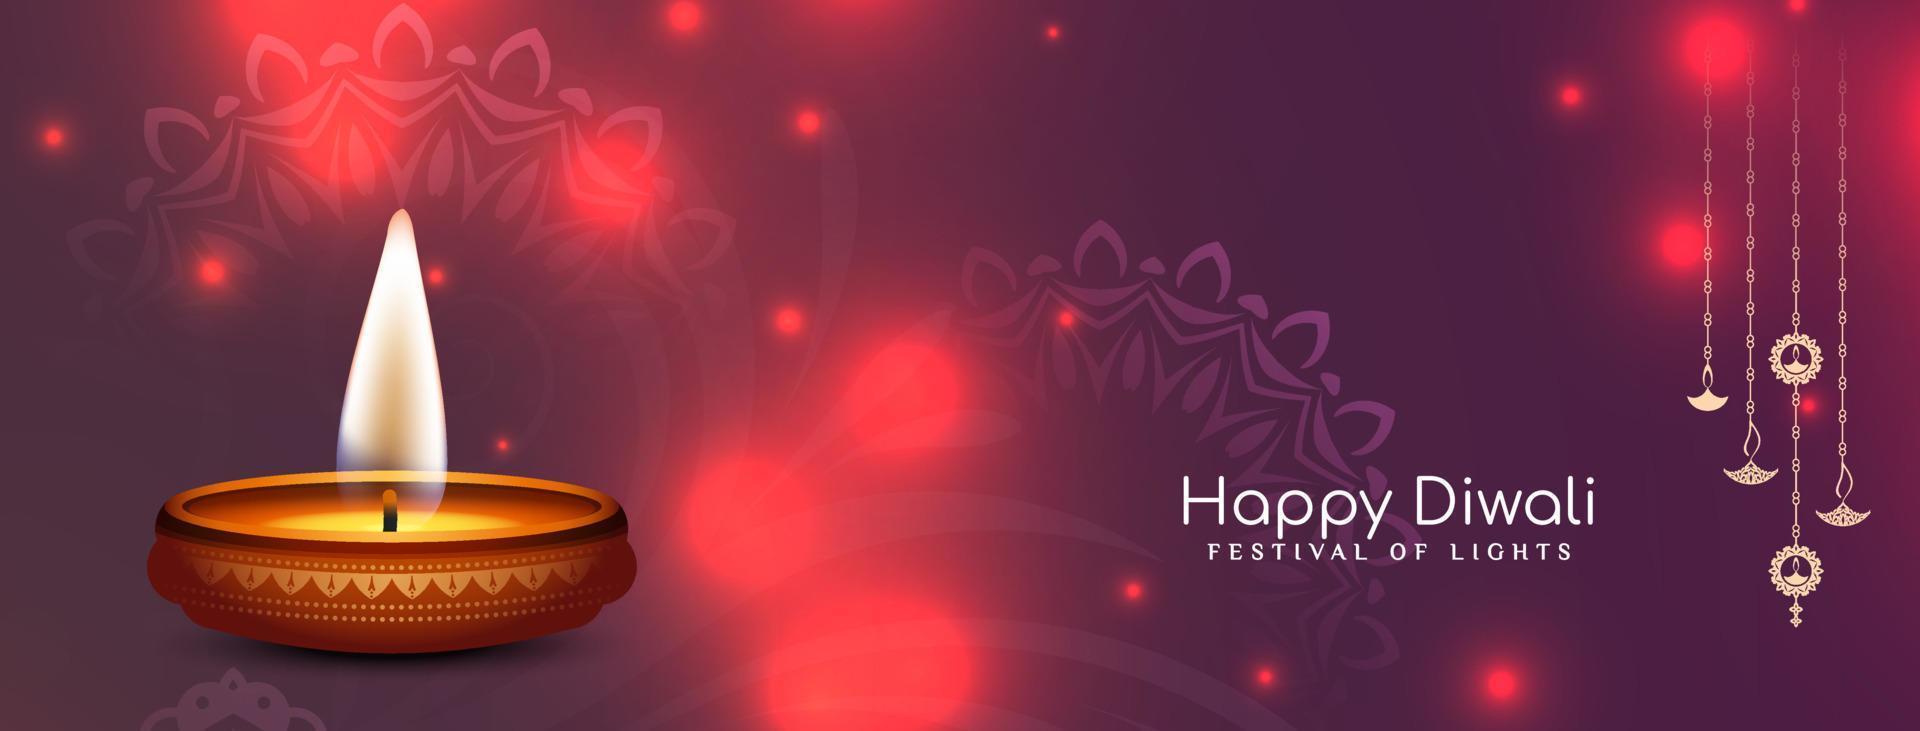 schönes fröhliches diwali festival kulturelles klassisches bannerdesign vektor